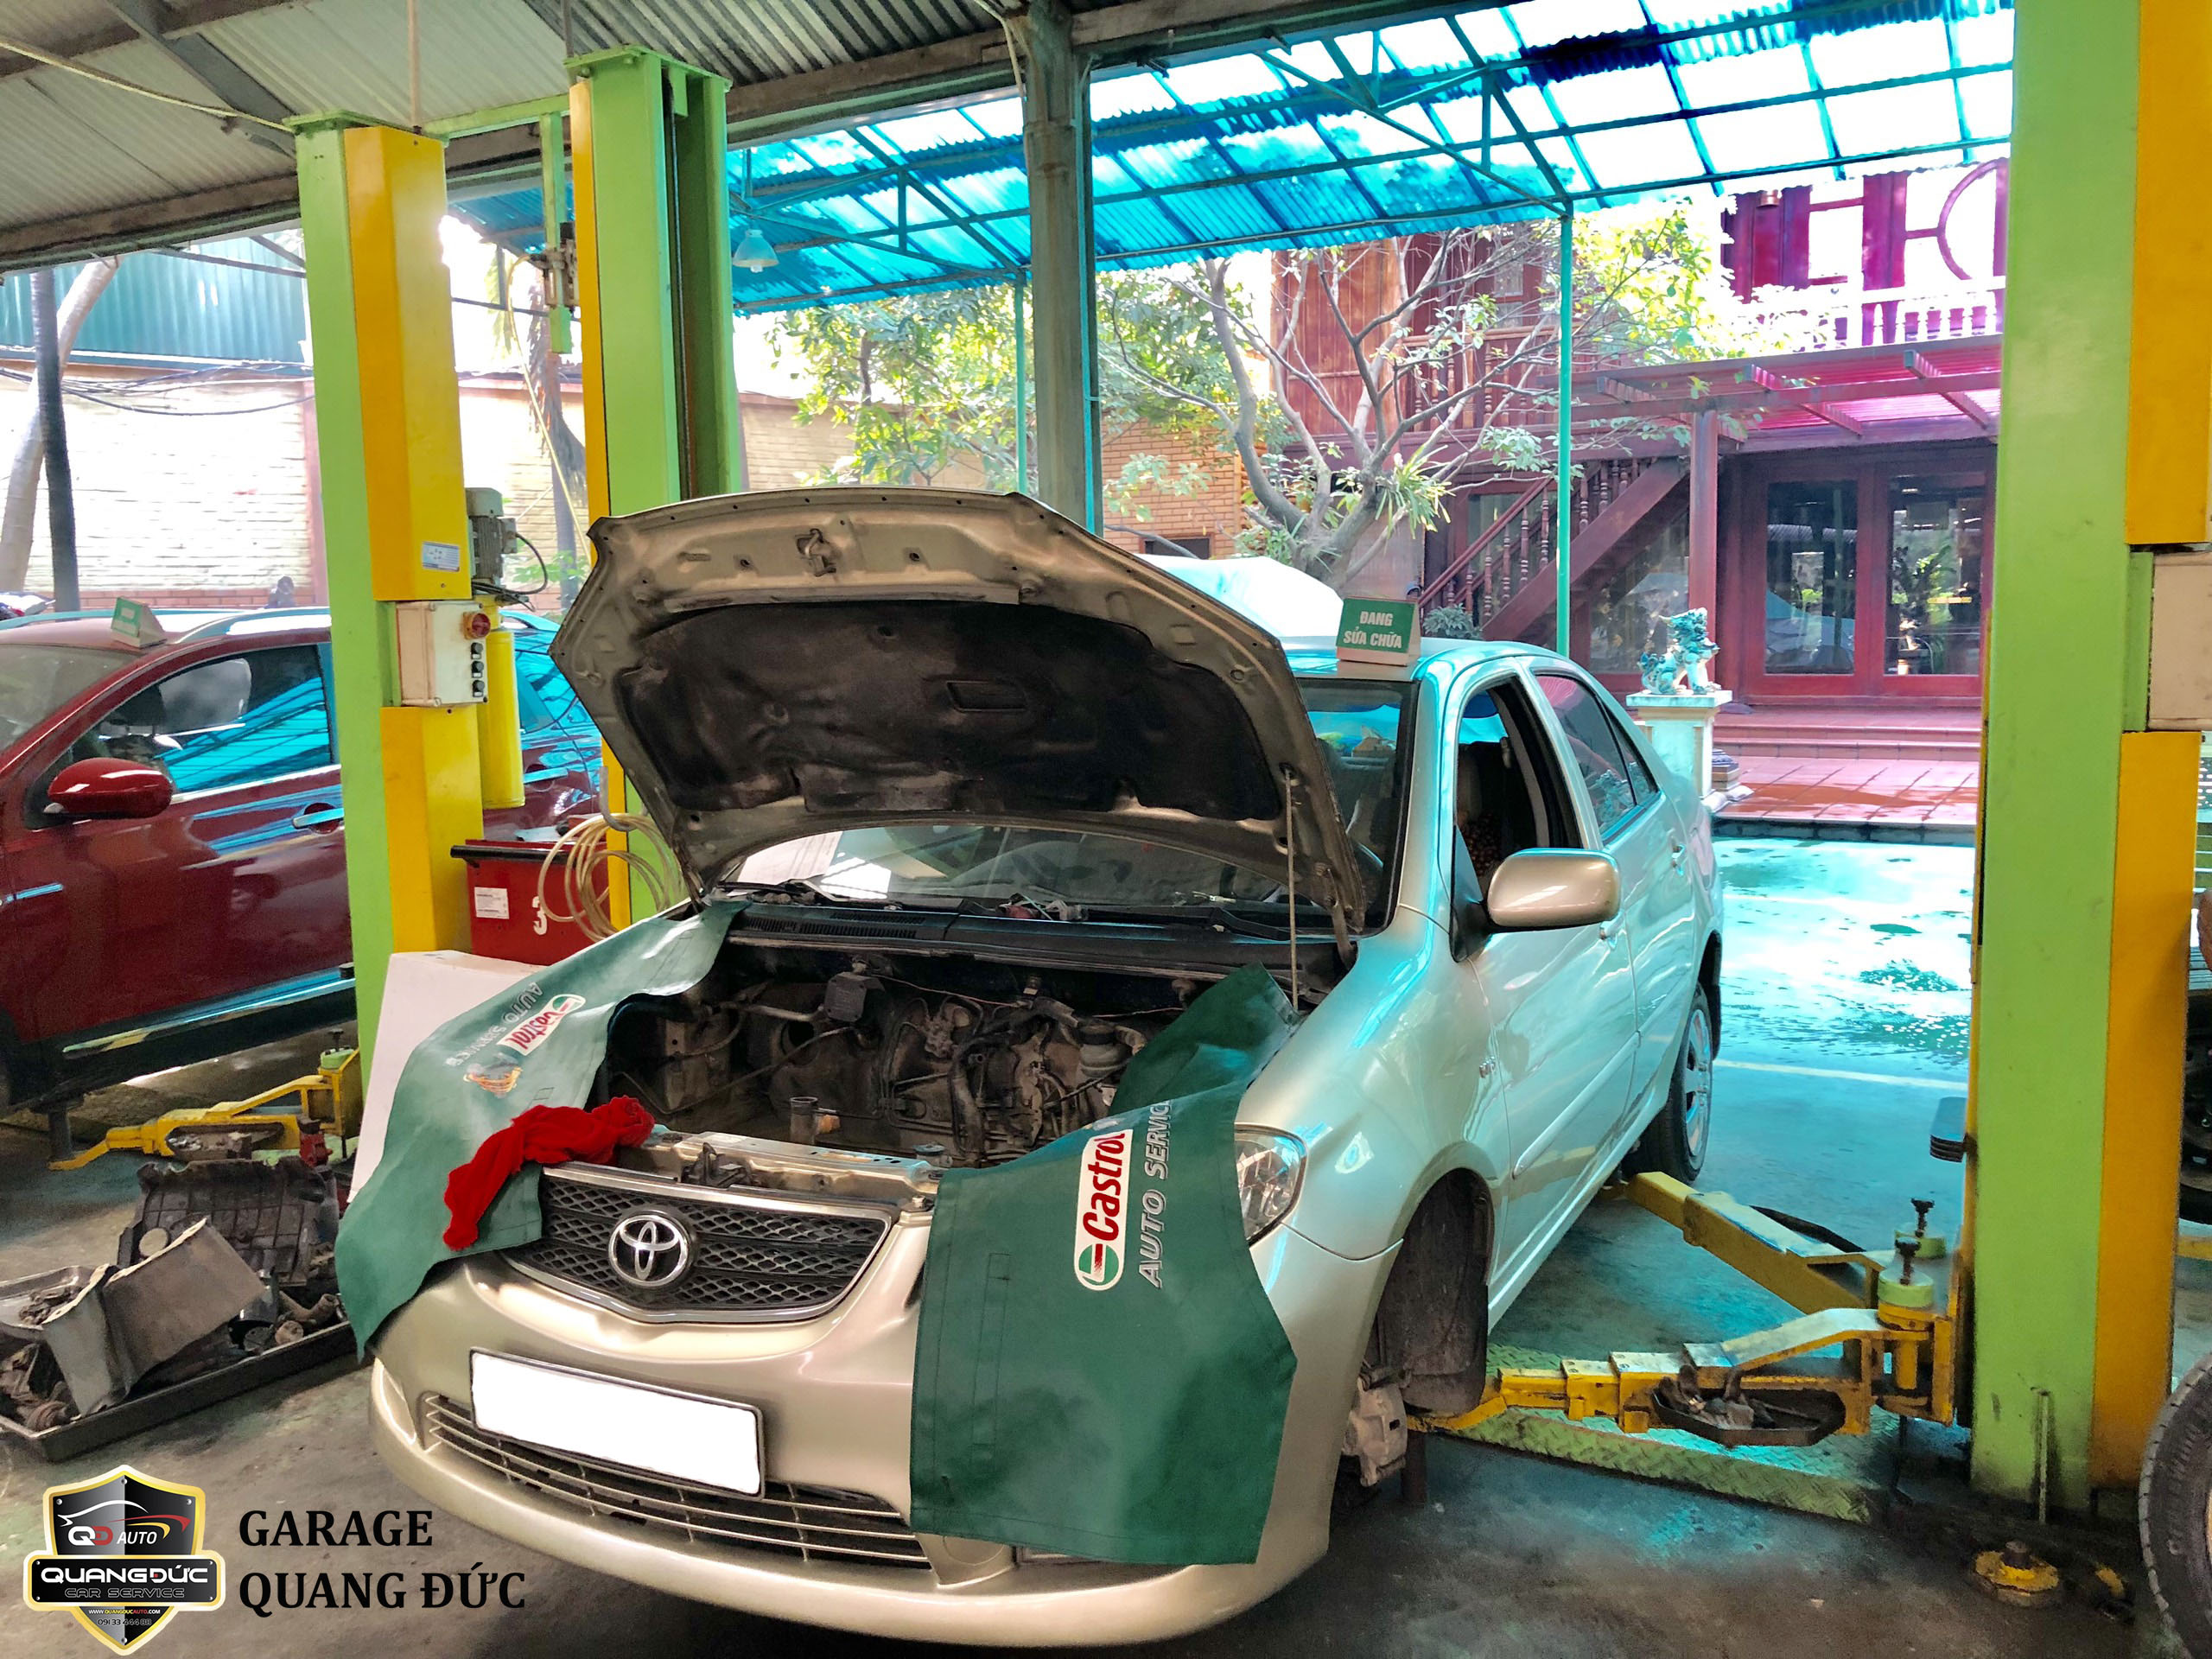 Quy trình bảo dưỡng ô tô chuyên nghiệp - uy tín tại Hà Nội